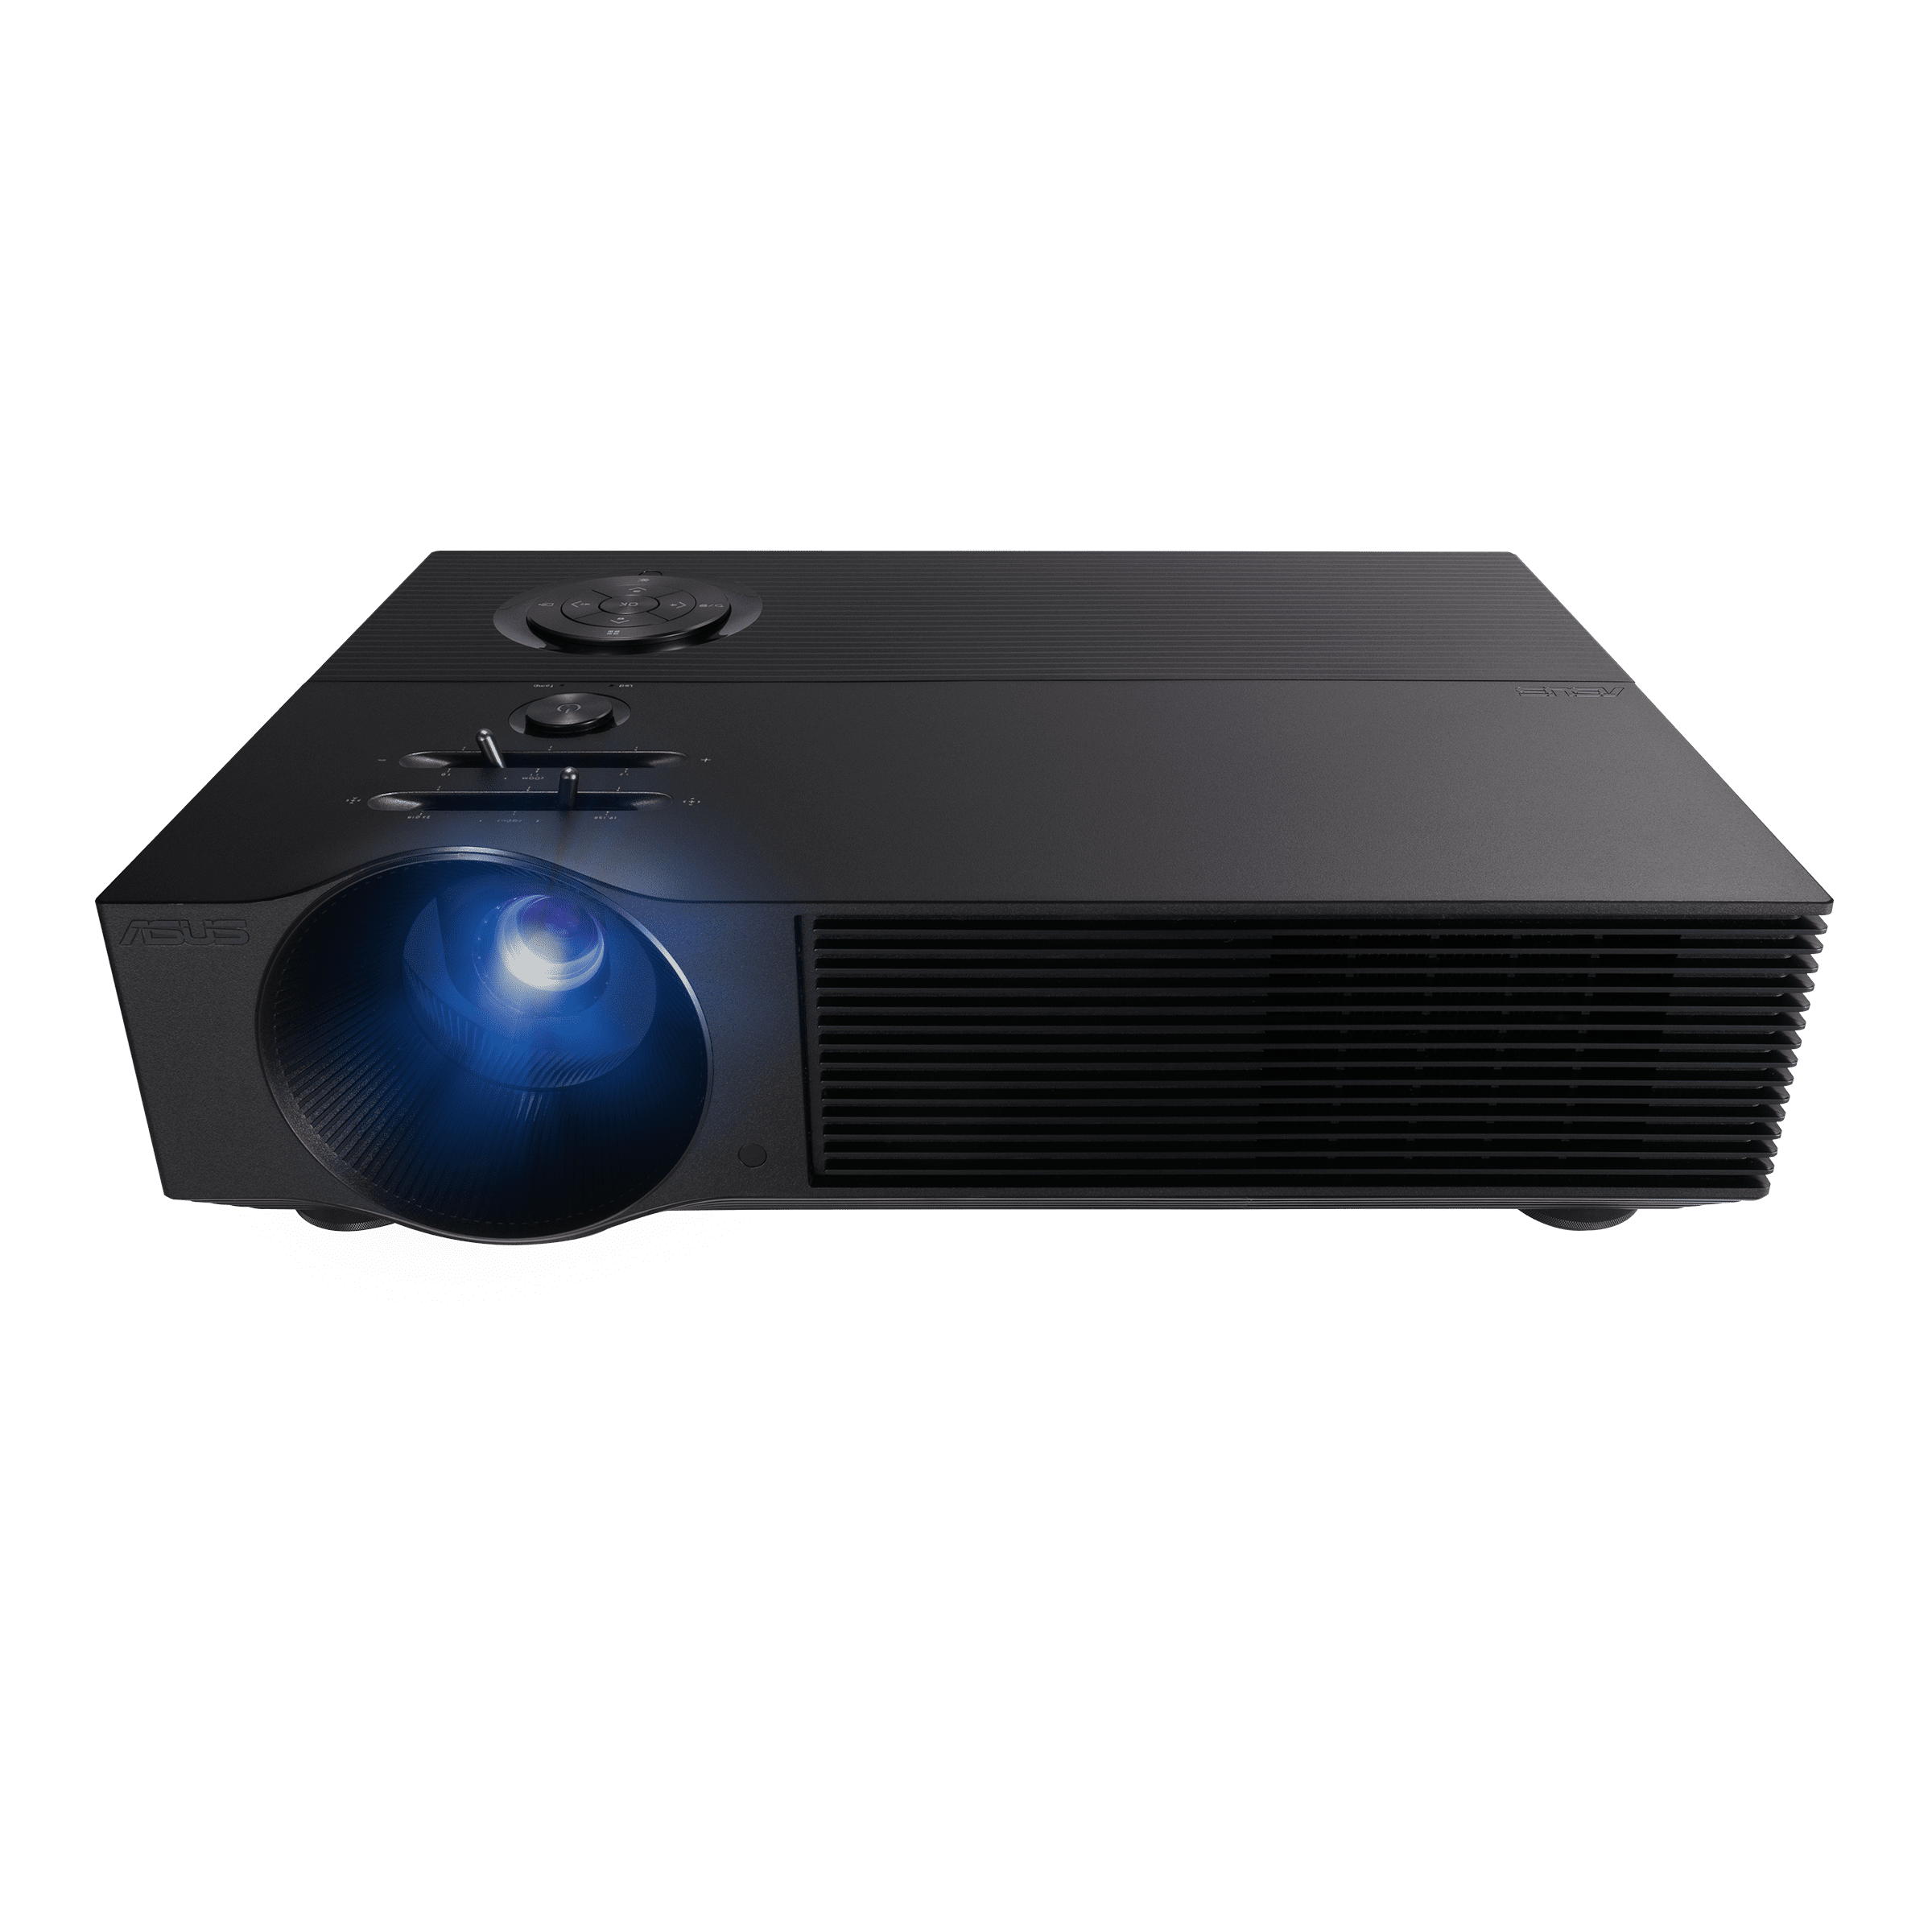 ASUS estrena proyector DLP: el H1 ofrece resolución Full HD con